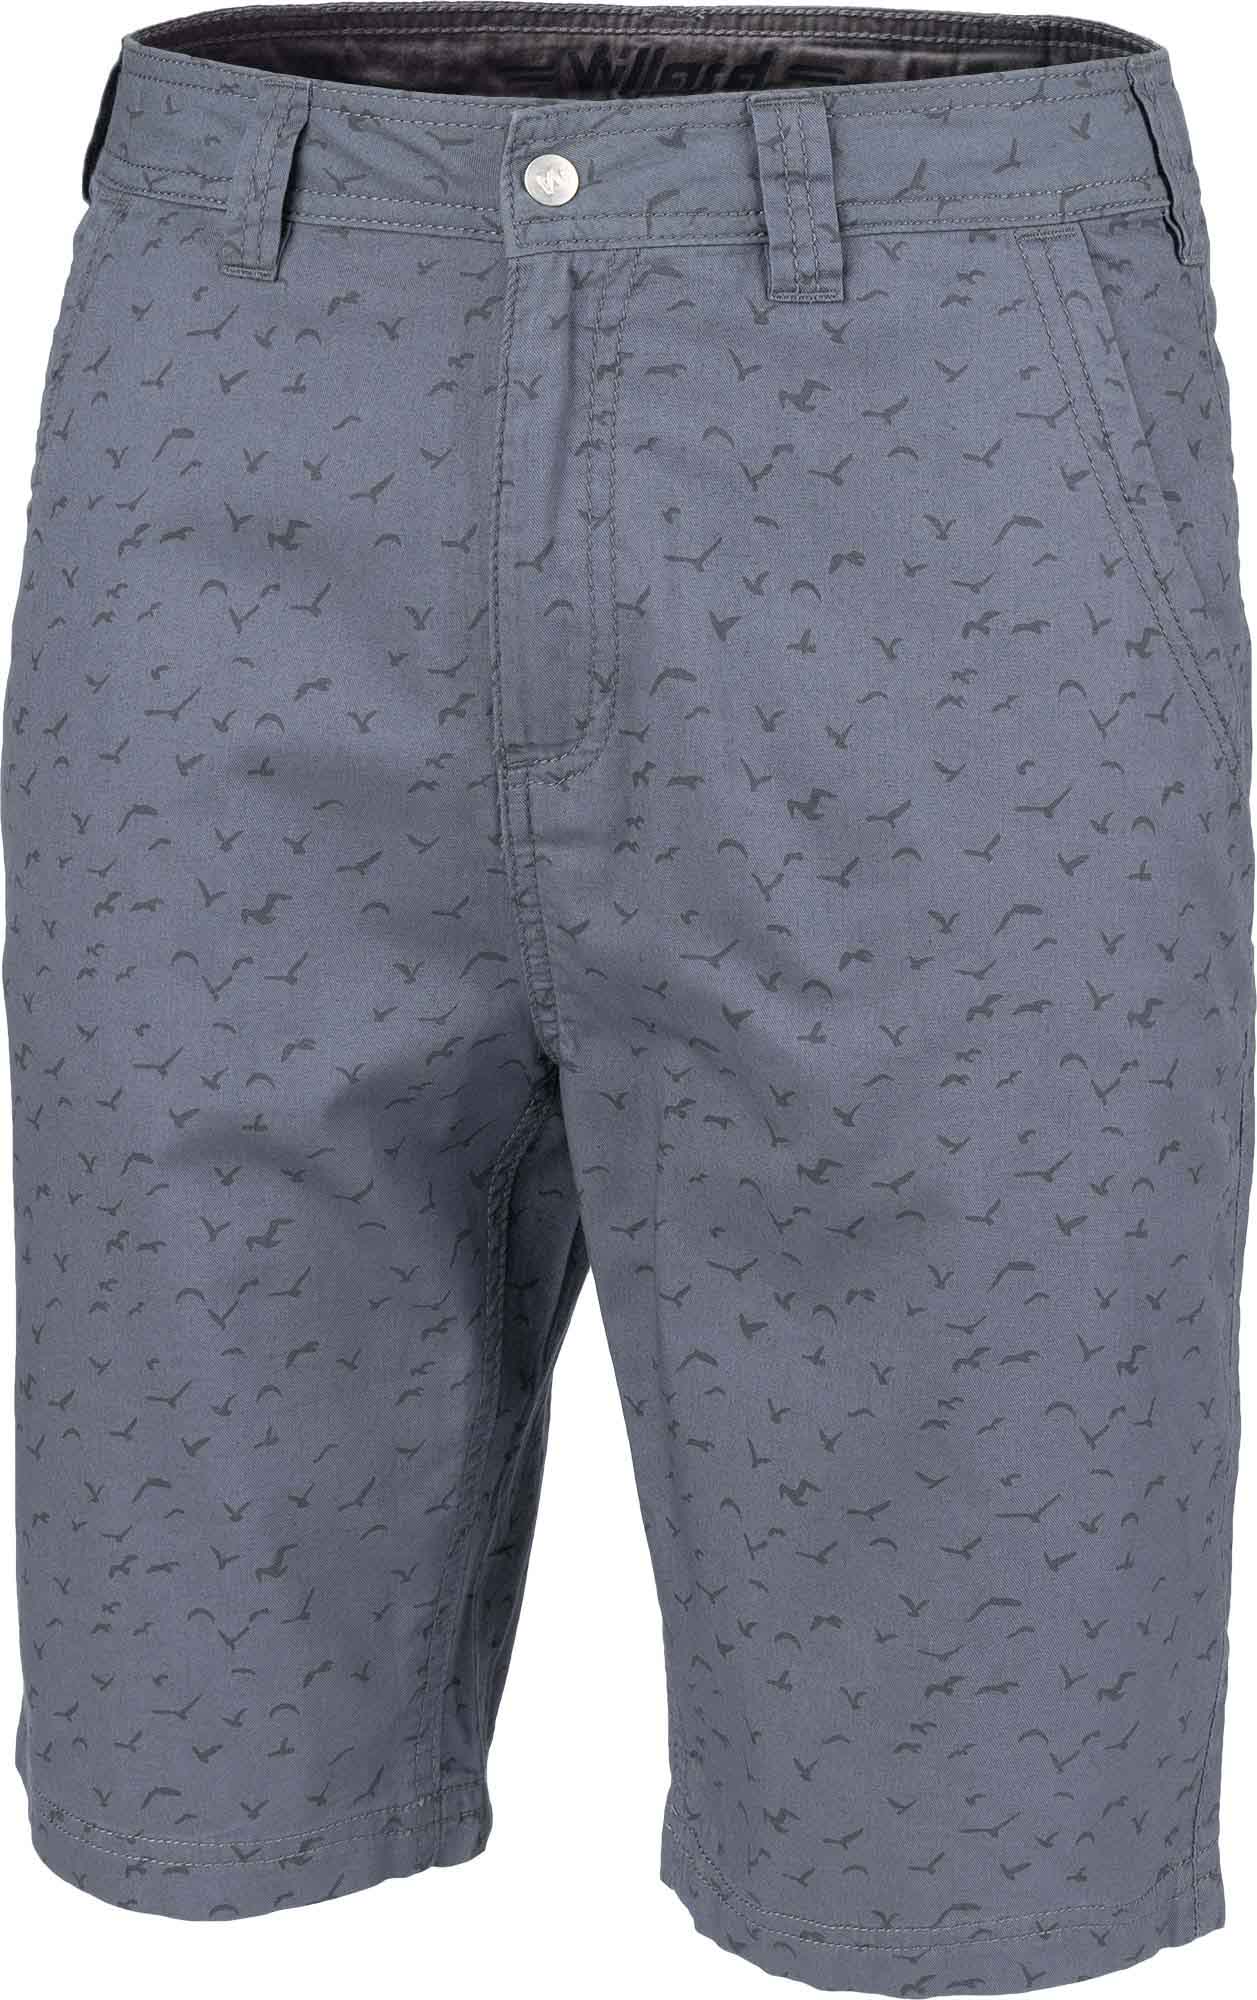 Men’s canvas shorts